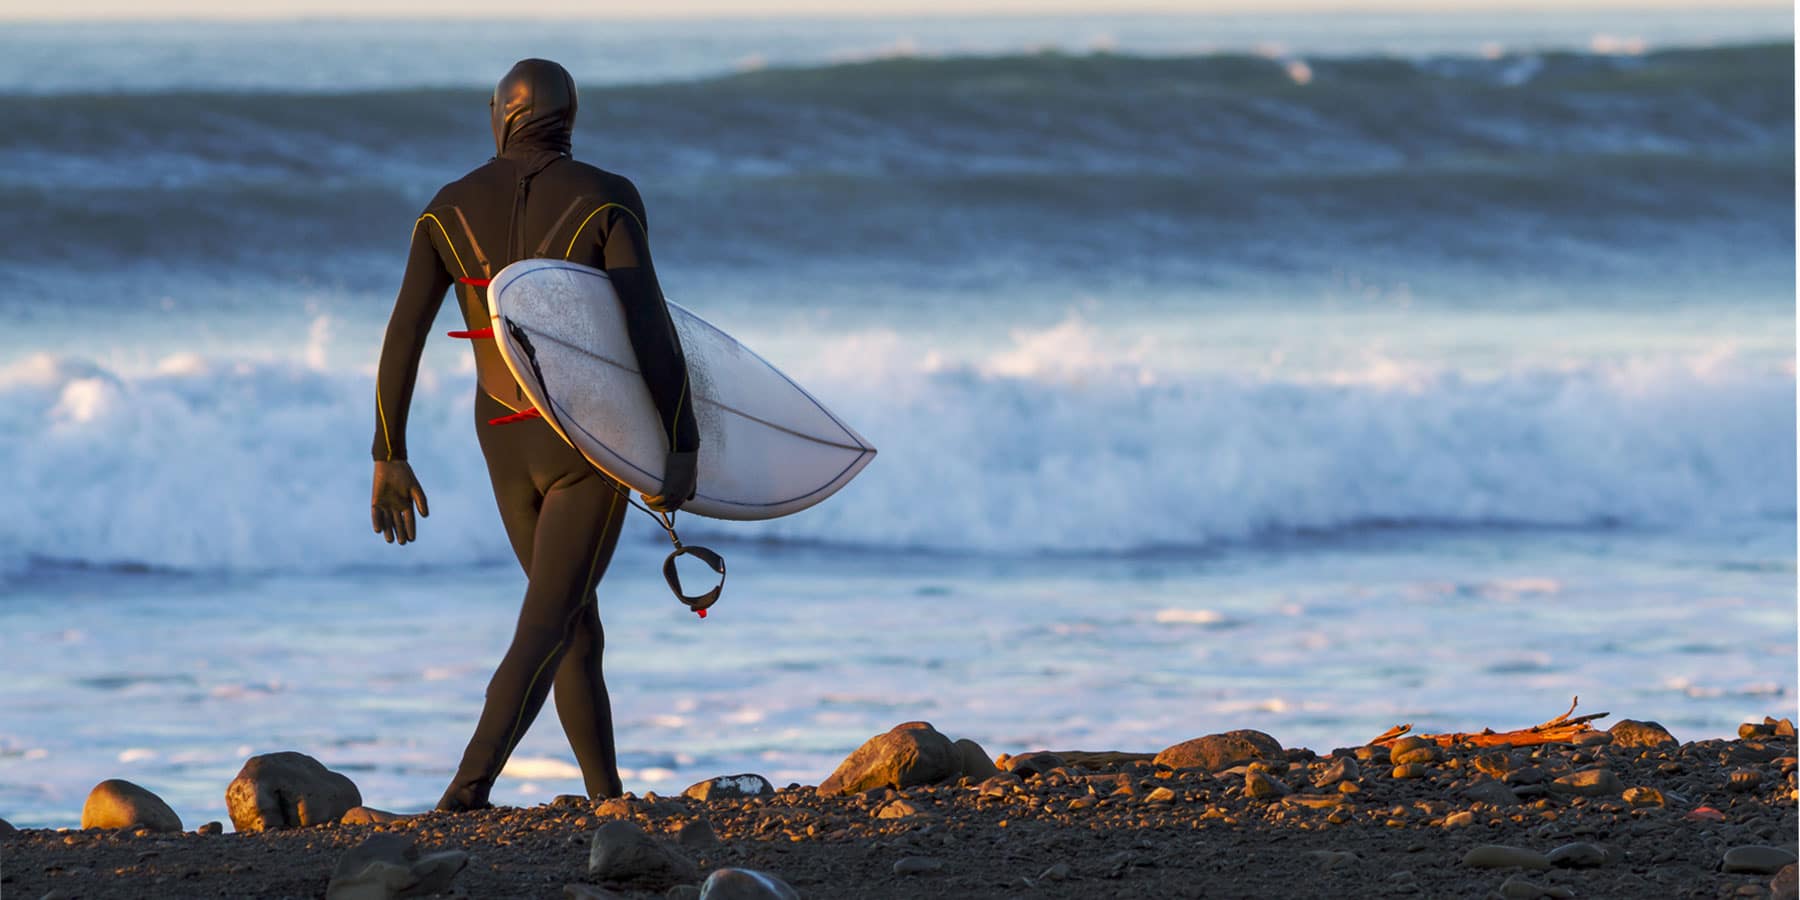 Amis surfeurs, quelques conseils pour protéger votre peau en eau froide